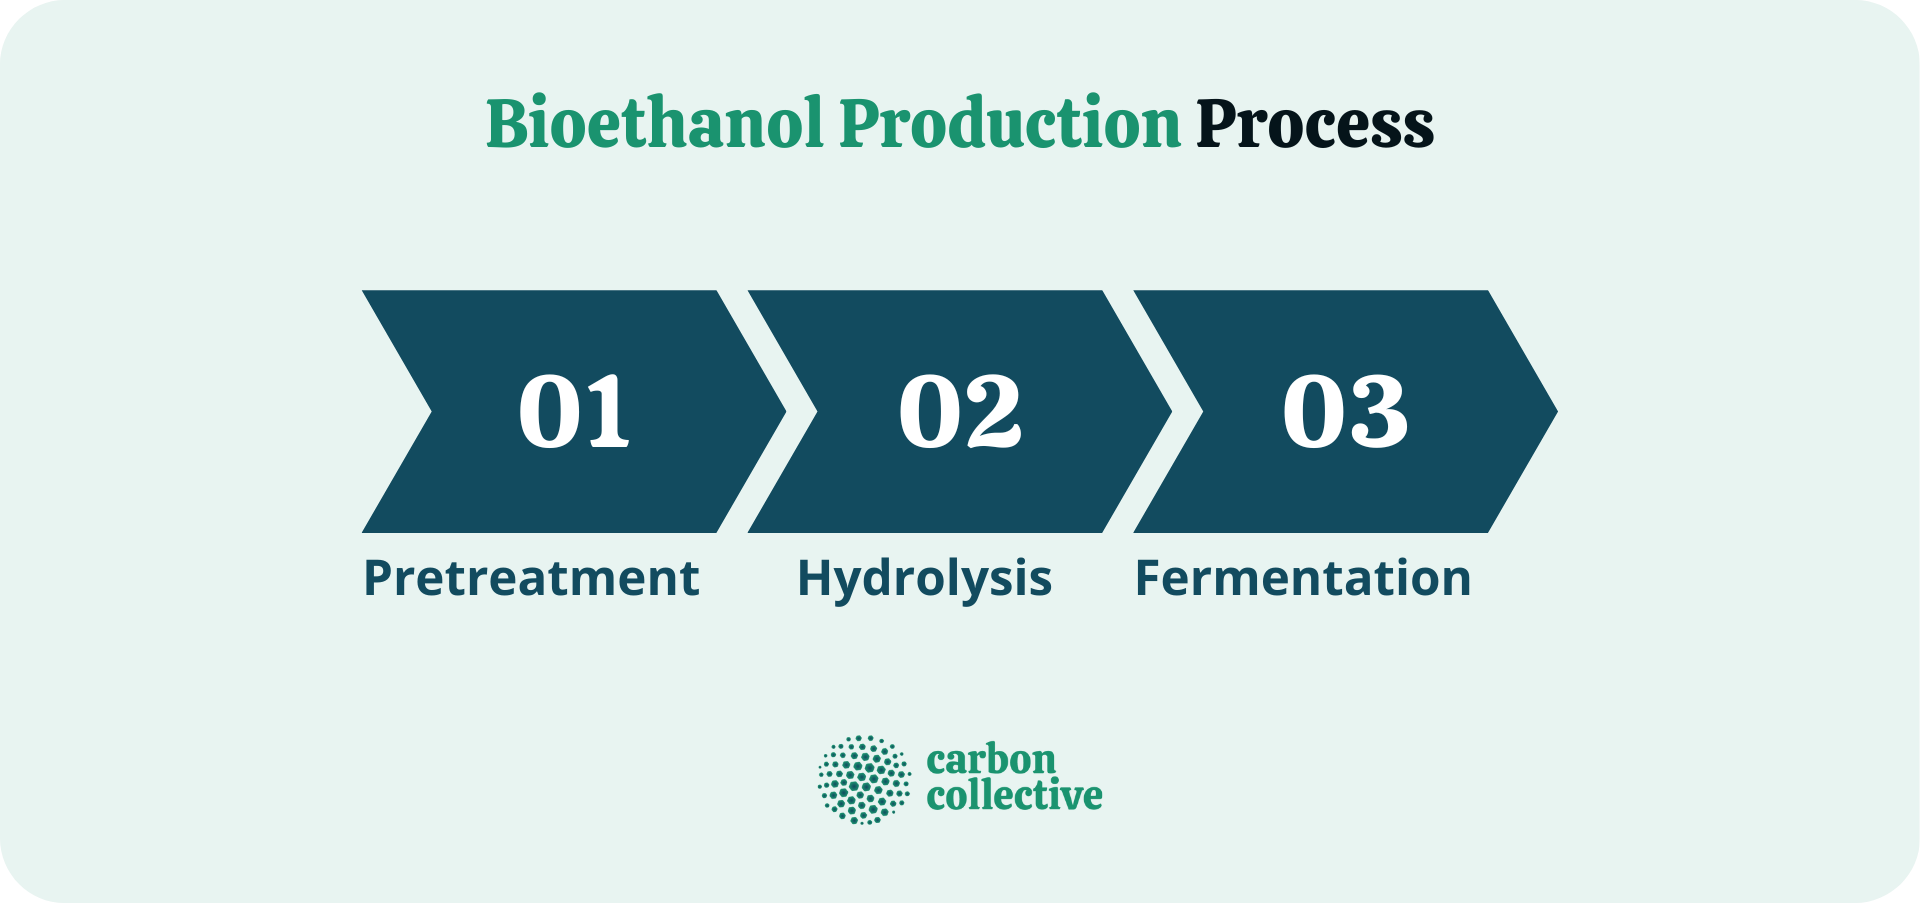 Bioethanol production